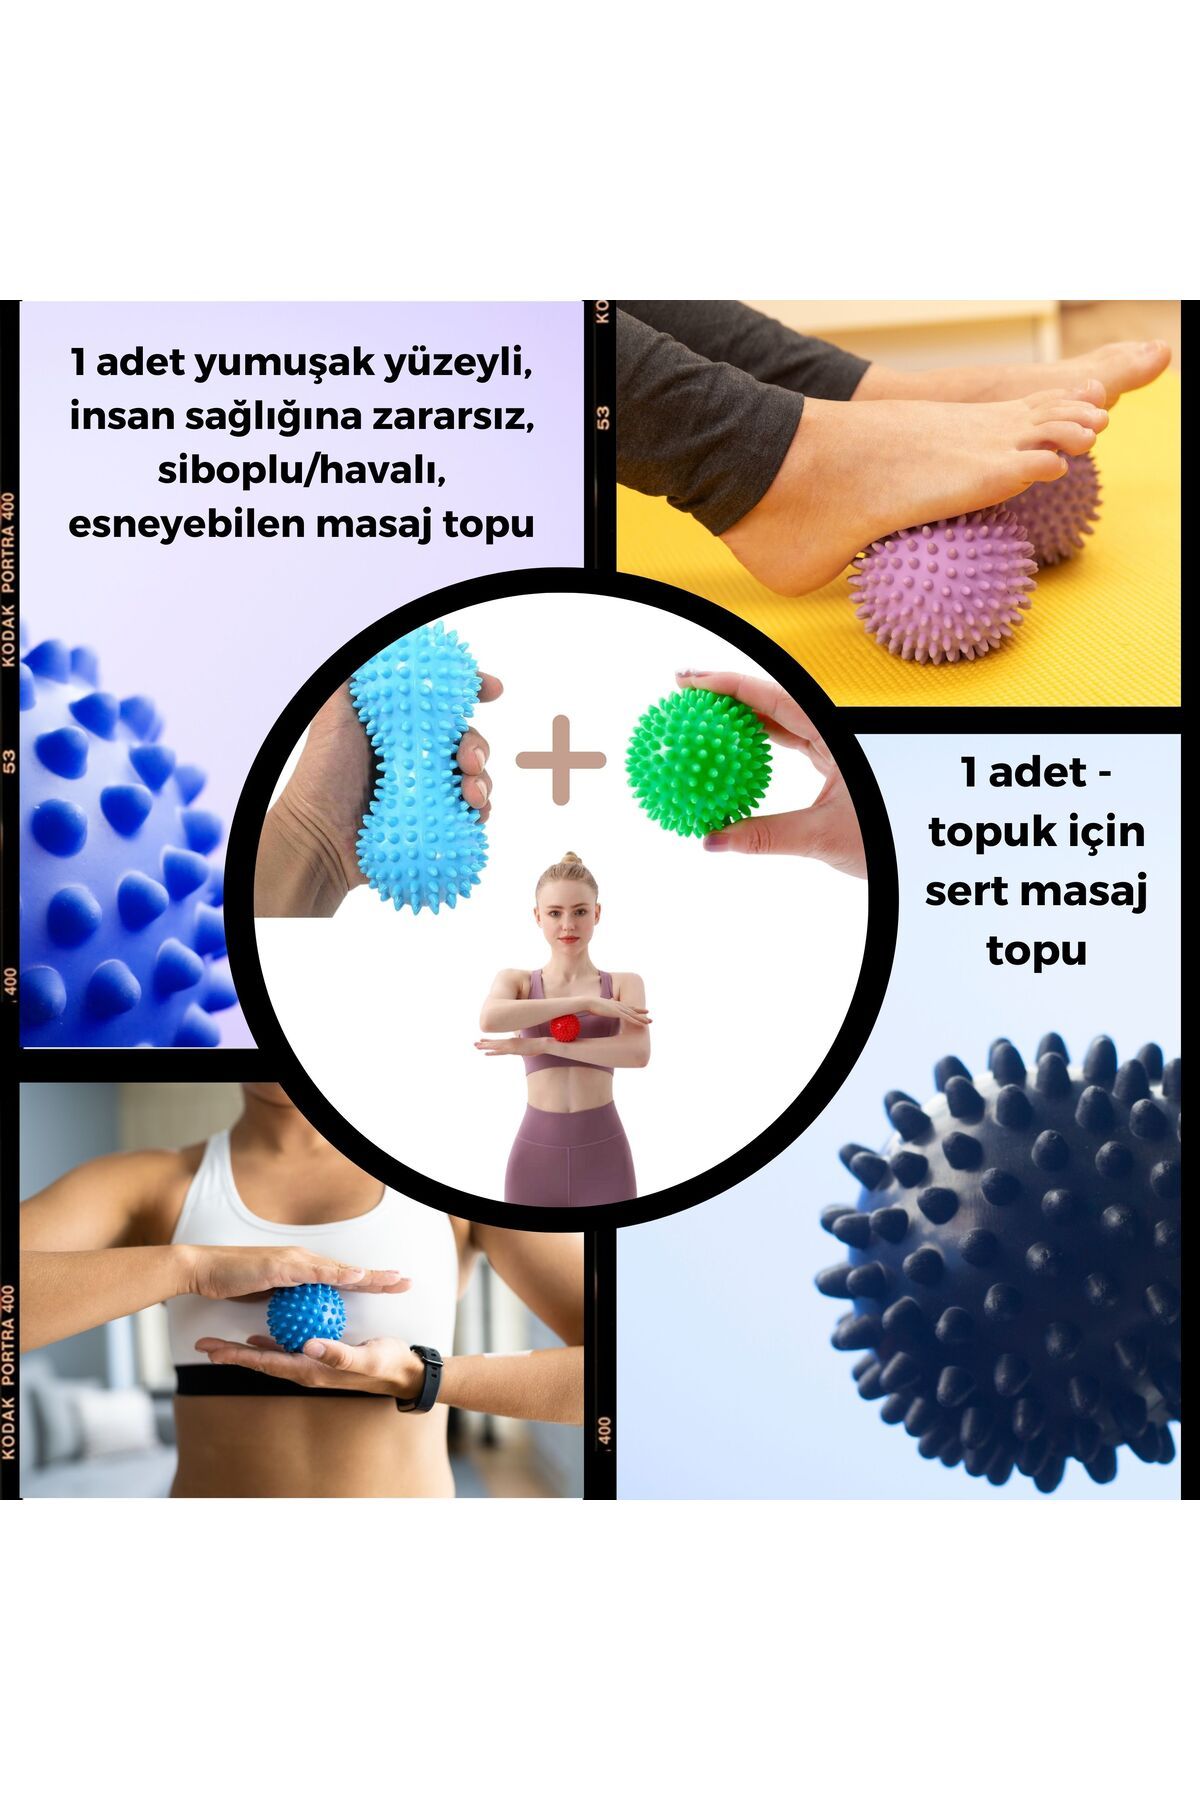 MediPal Kas Gevşetici Masaj Topu - Dikenli Duyu Uyarıcı Masaj Egzersiz Topu 2 Adet Massage / Exercise Ball